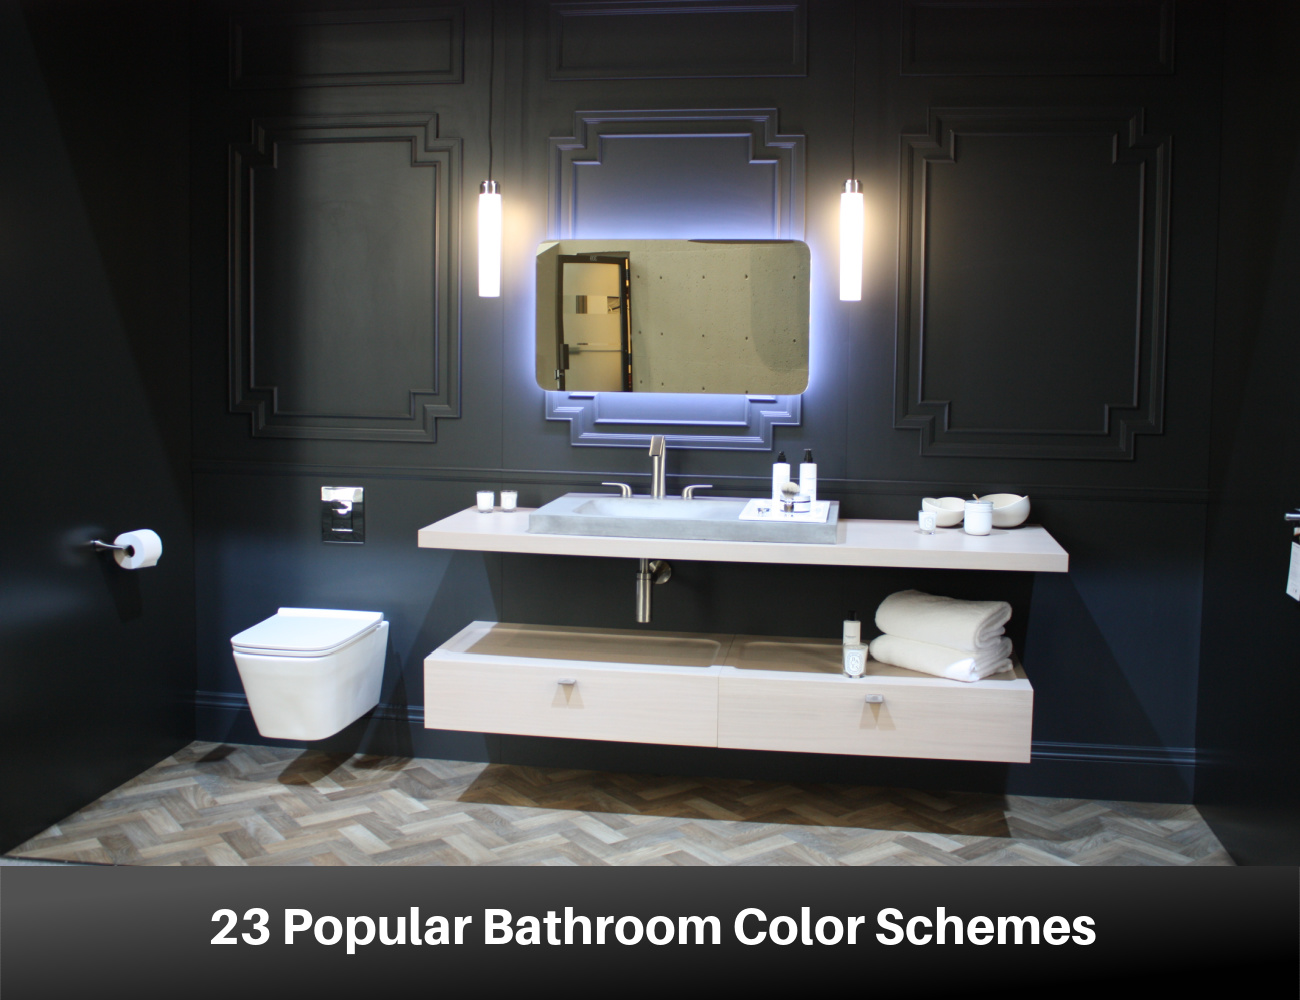 23 Popular Bathroom Color Schemes